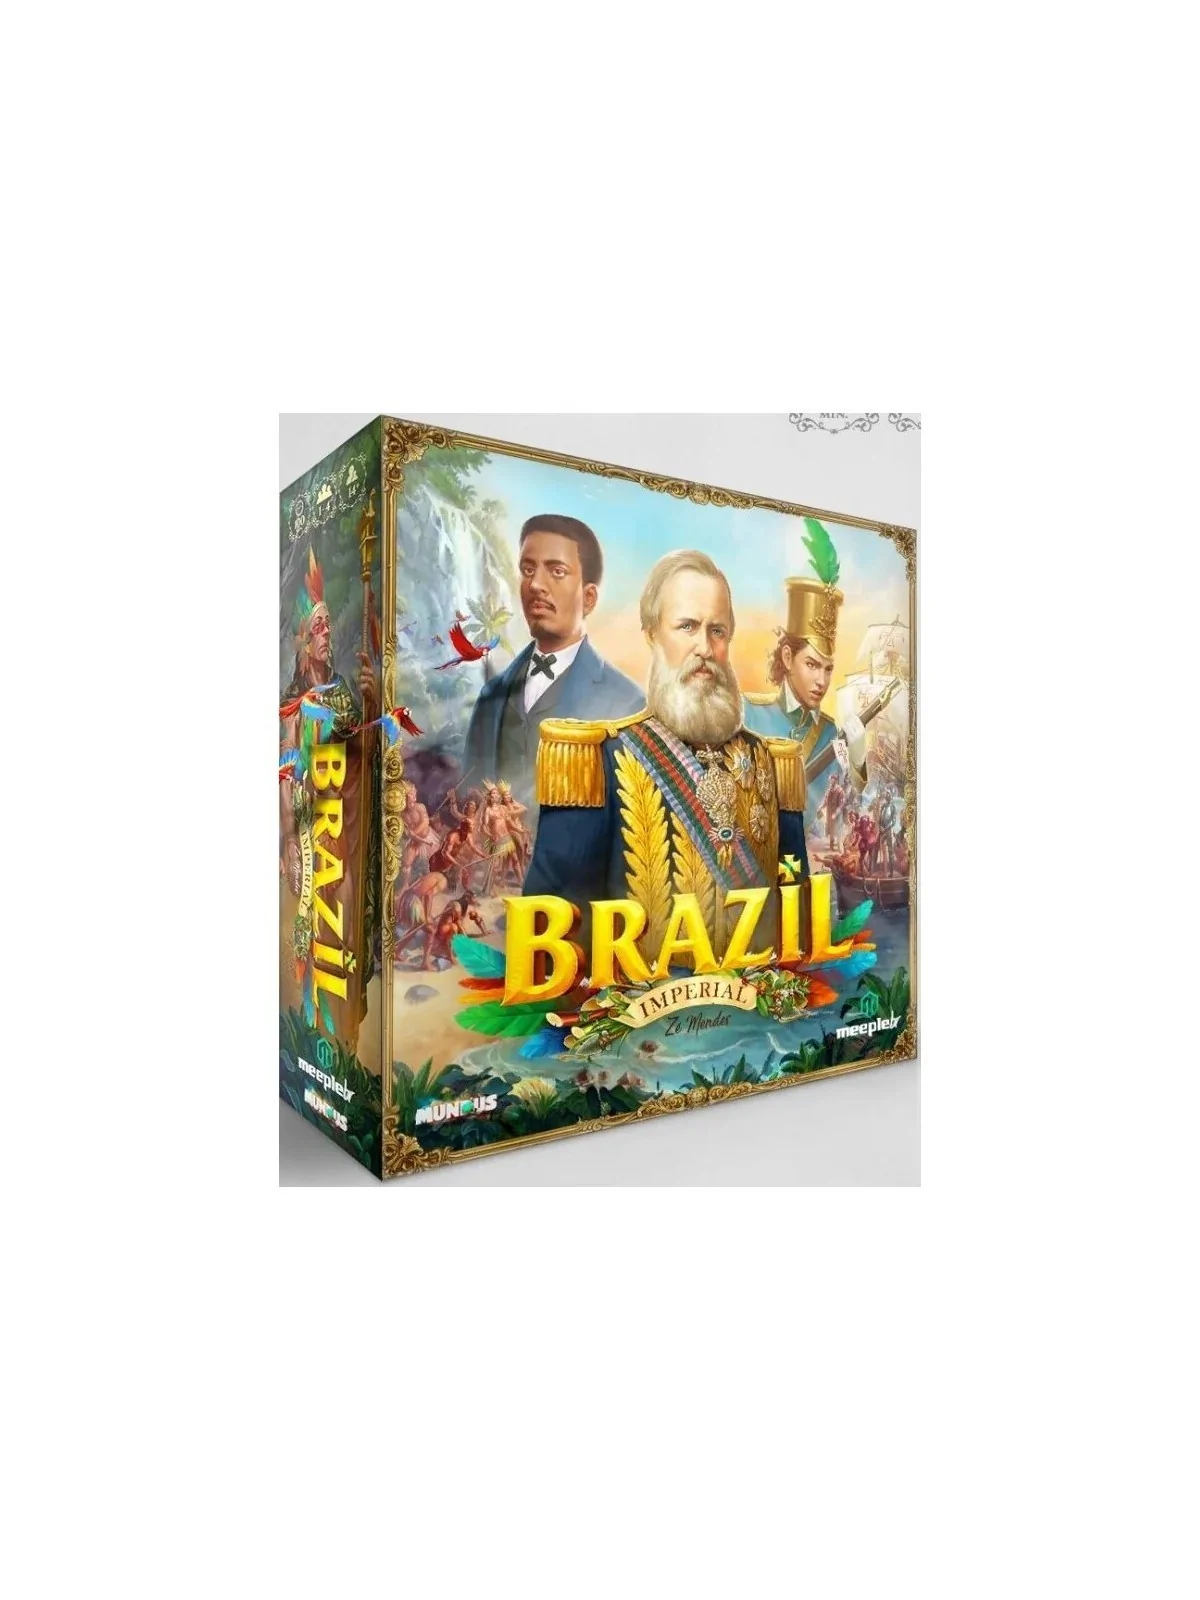 Comprar Brazil: Imperial (Portugués) barato al mejor precio 53,96 € de